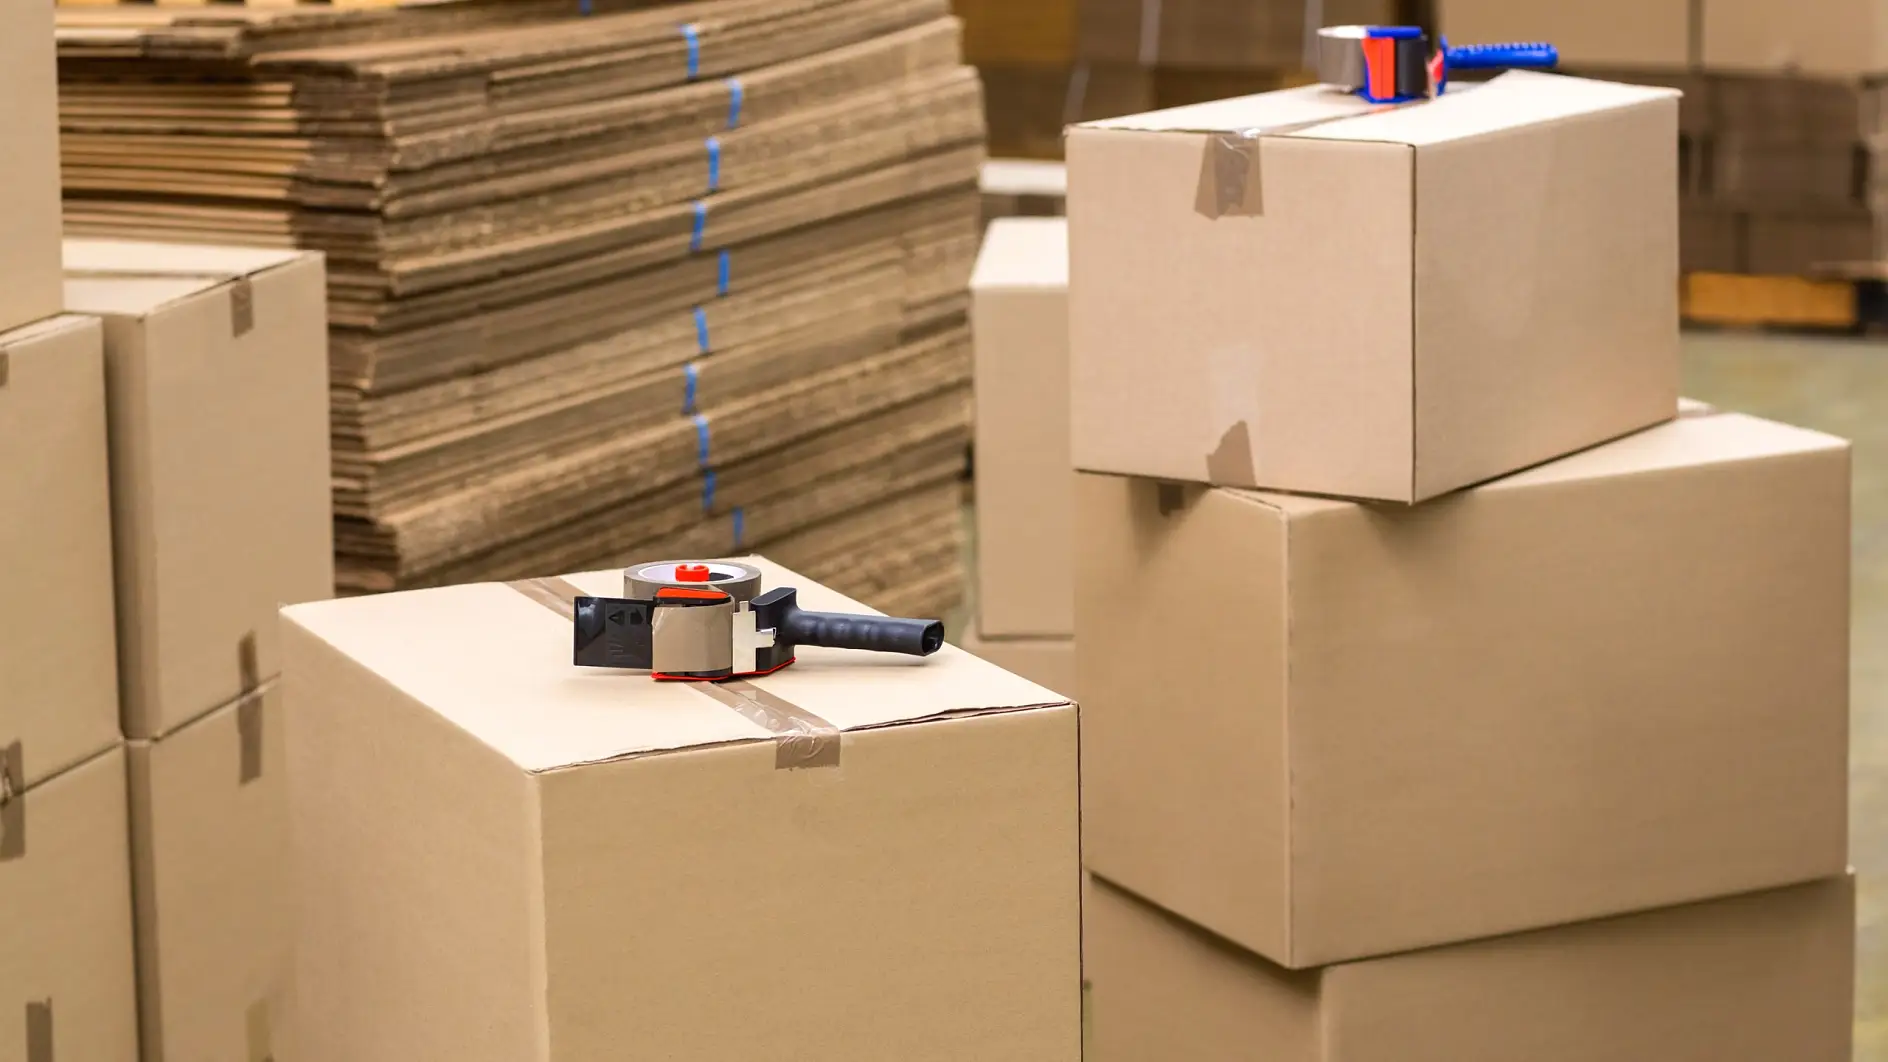 Cardboard packaging for industrial goods.